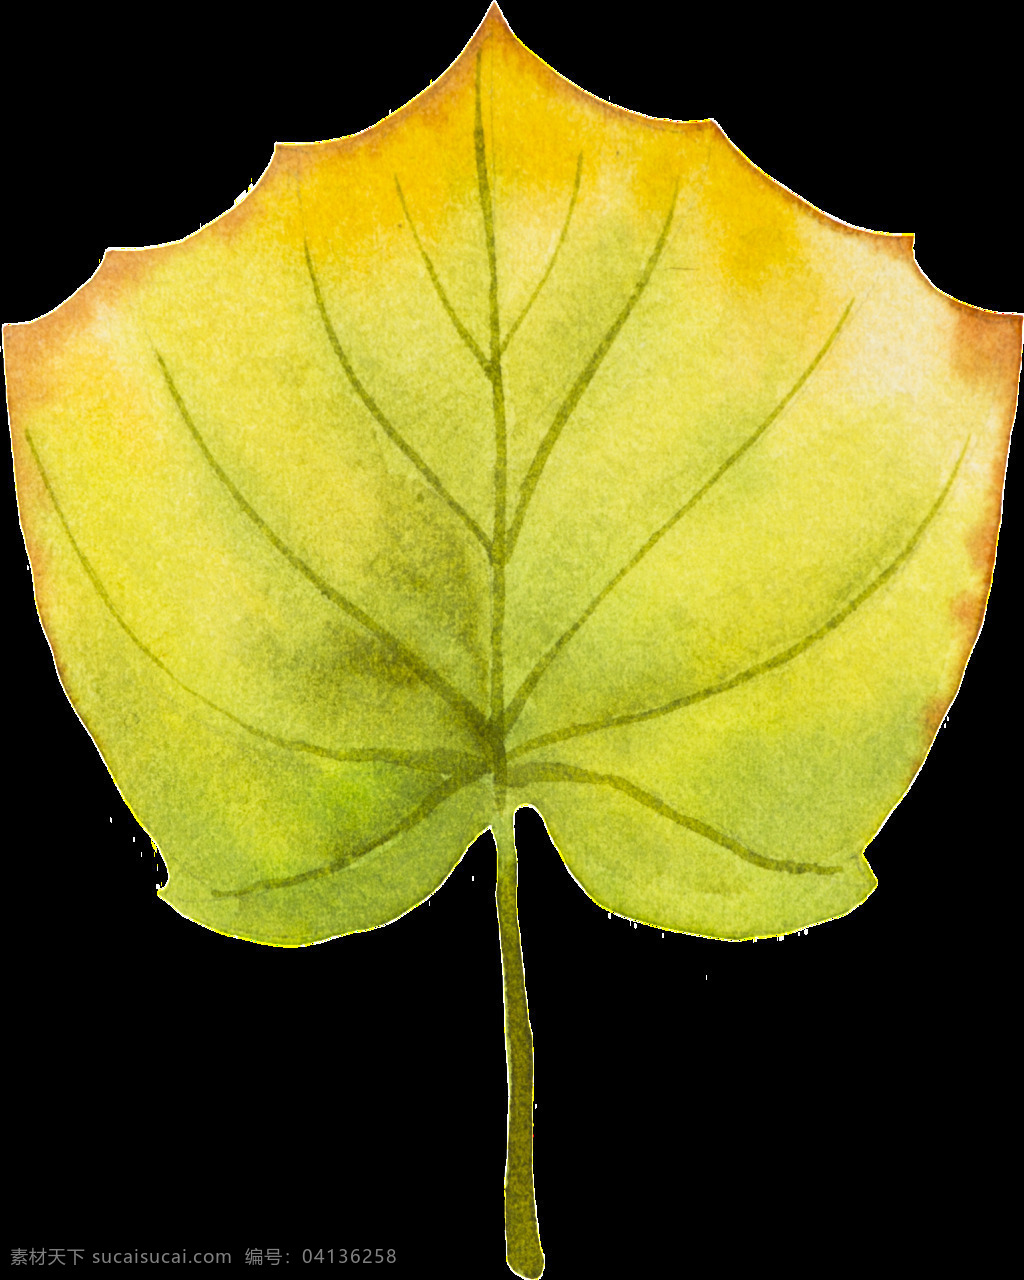 片 枯黄 树叶 矢量 黄色 绿色 落叶 平面素材 设计素材 矢量素材 叶子